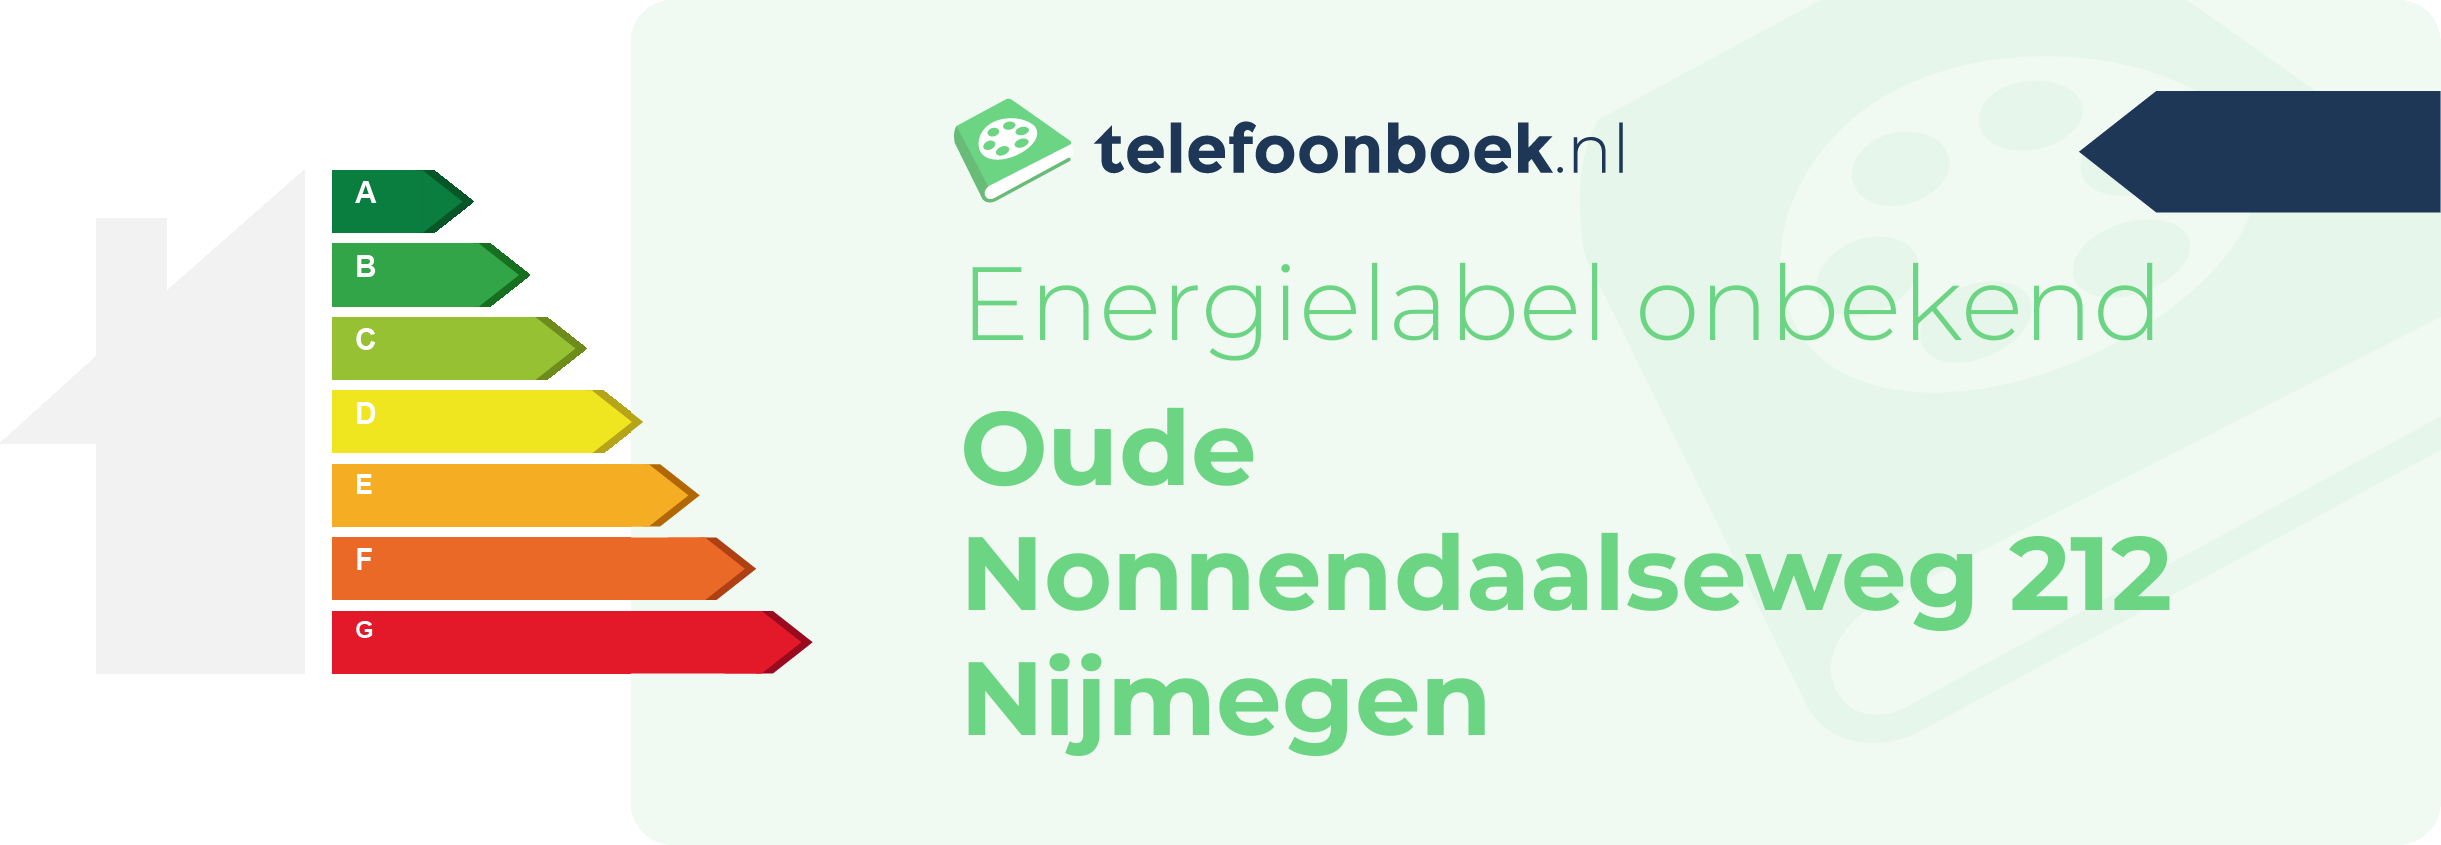 Energielabel Oude Nonnendaalseweg 212 Nijmegen